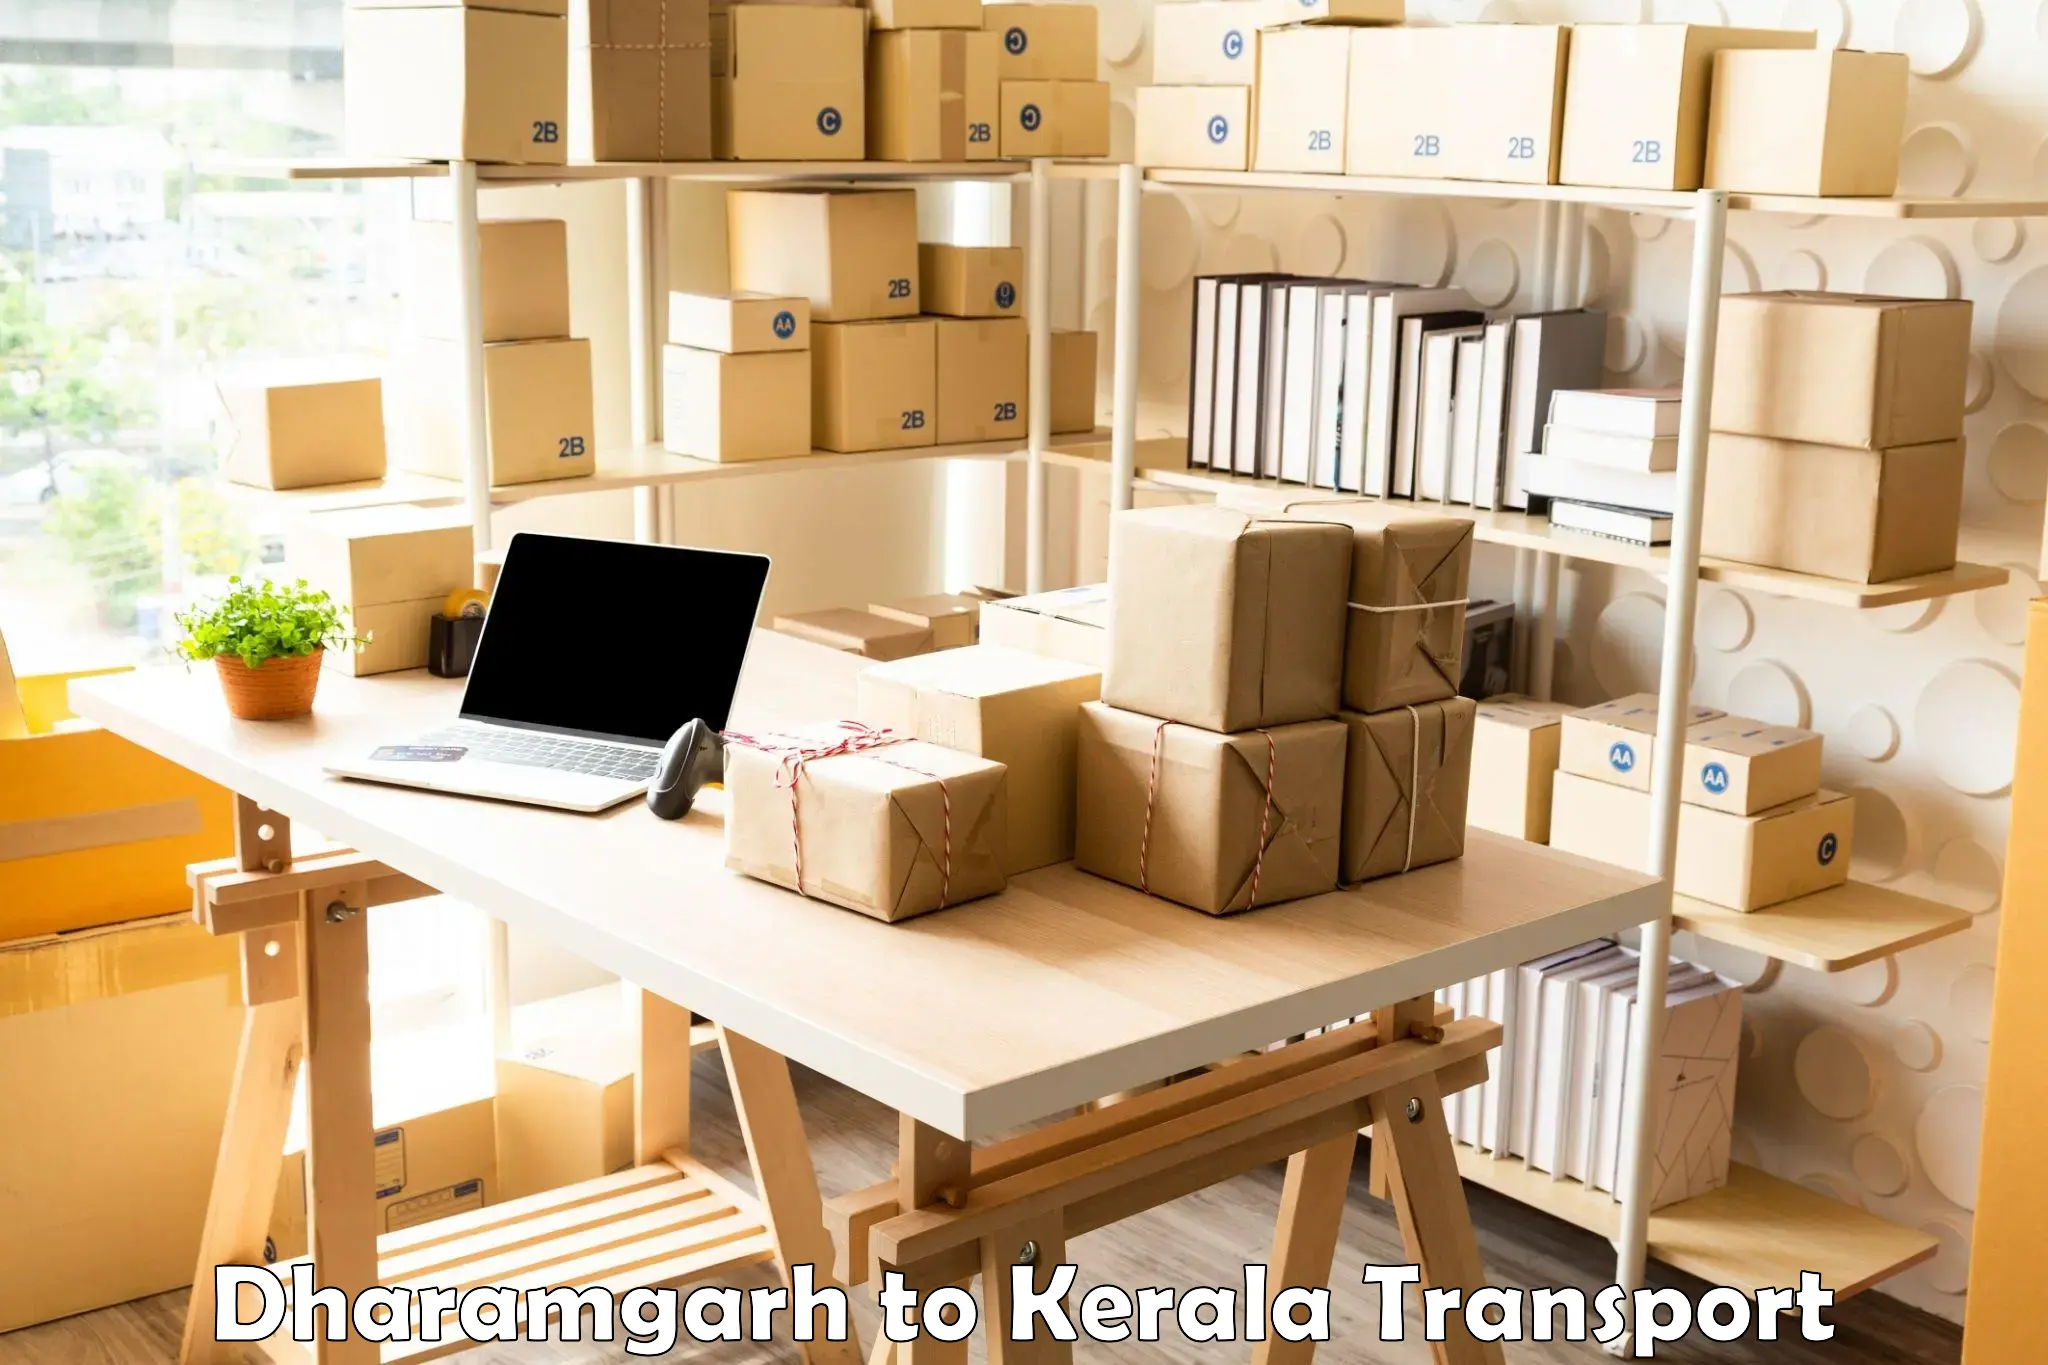 Pick up transport service Dharamgarh to Thiruvananthapuram